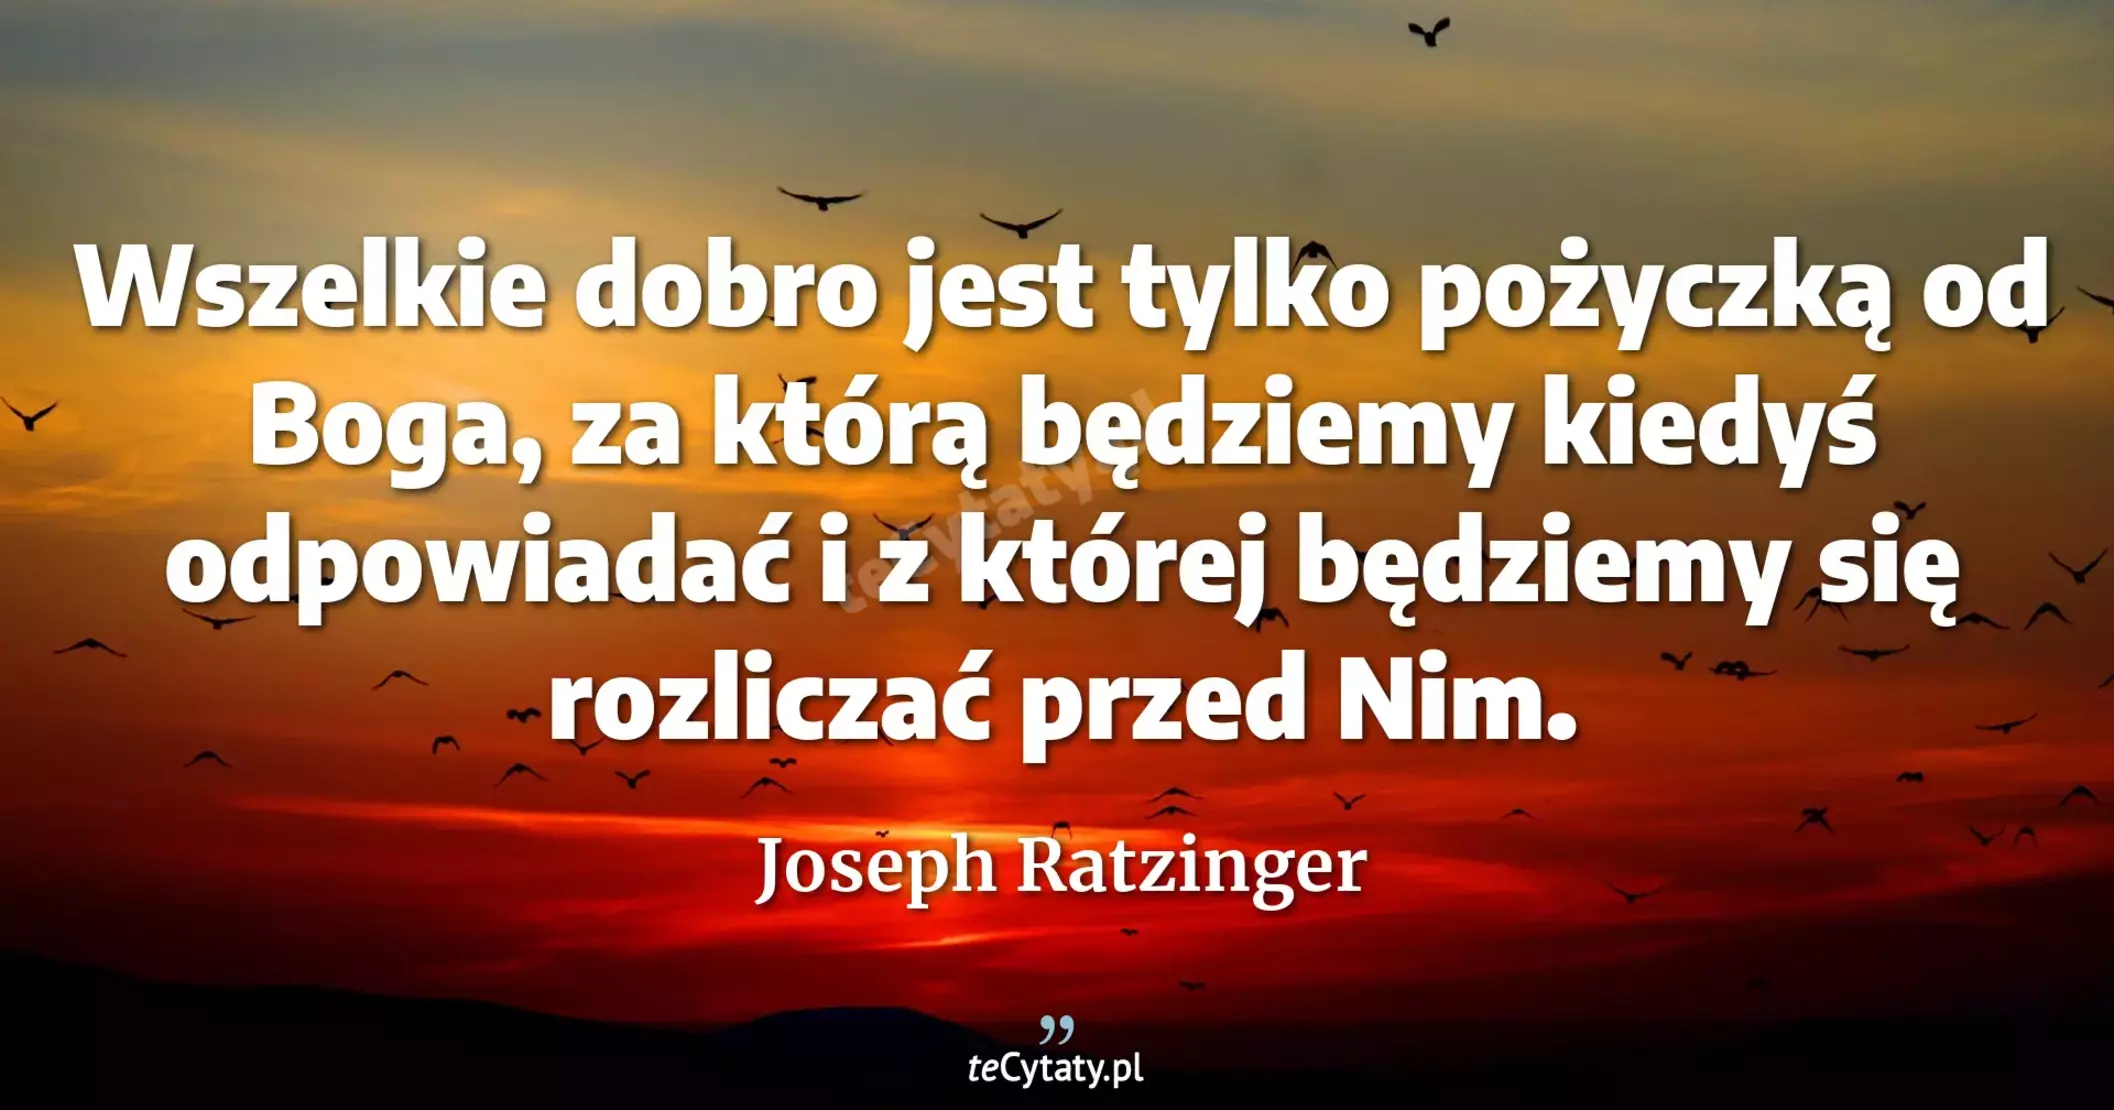 Wszelkie dobro jest tylko pożyczką od Boga, za którą będziemy kiedyś odpowiadać i z której będziemy się rozliczać przed Nim. - Joseph Ratzinger